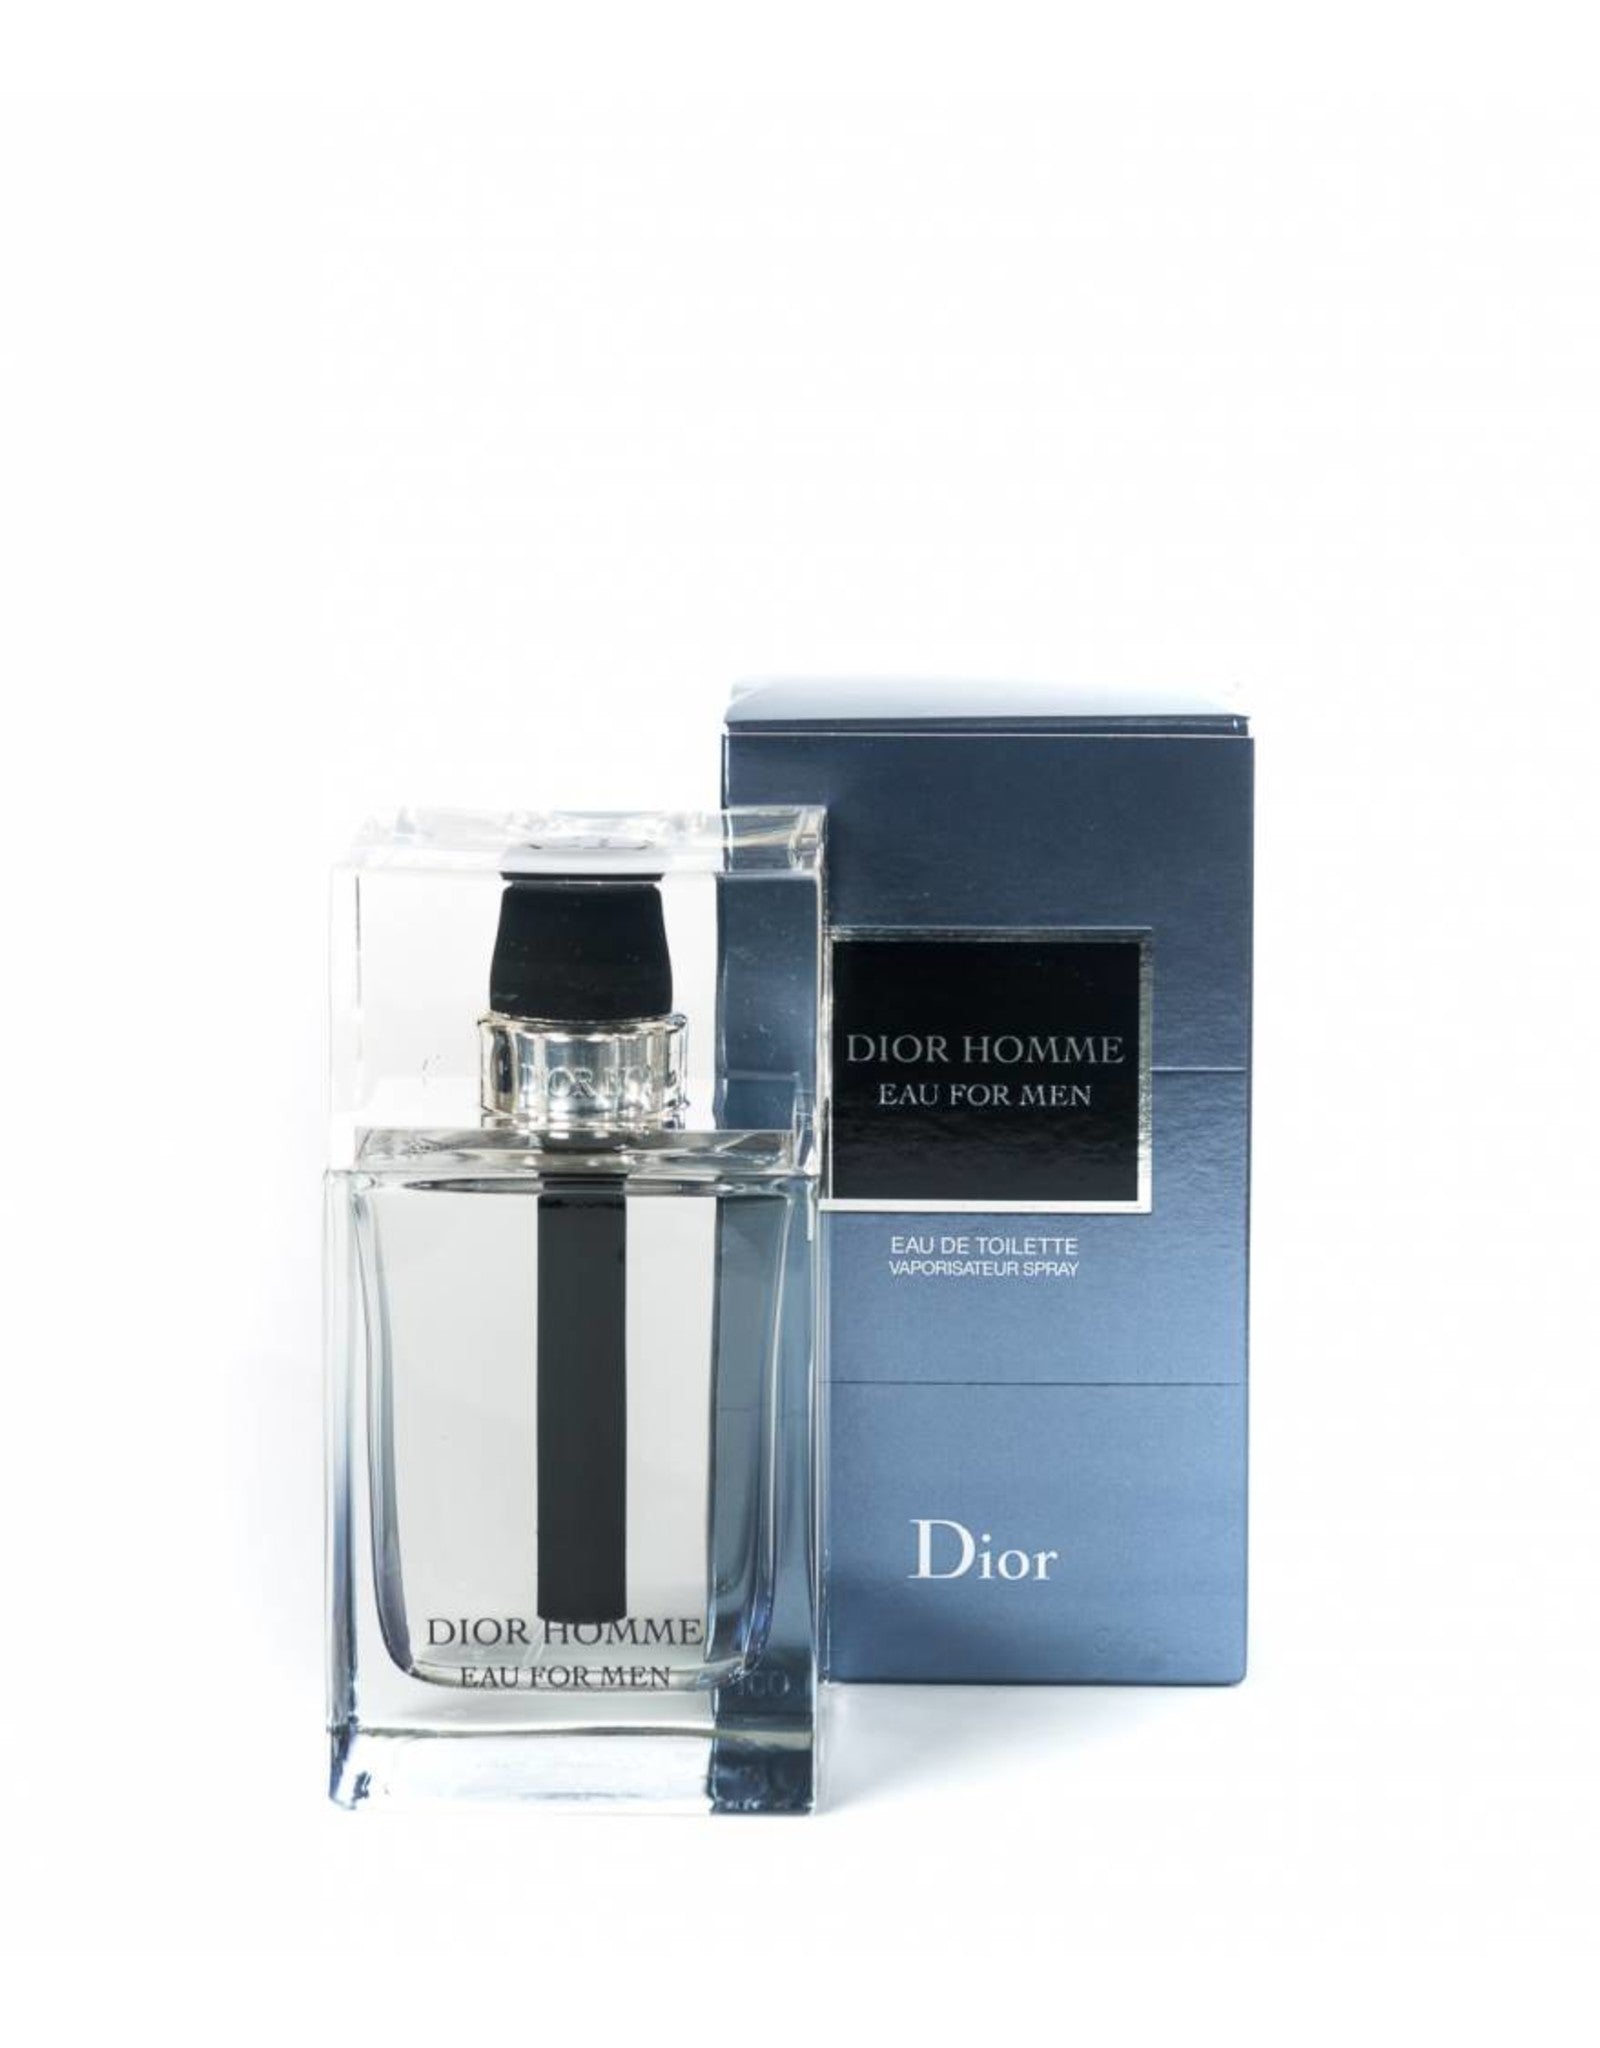 Dior Homme Eau For Men 150mL EDT - Lisa 